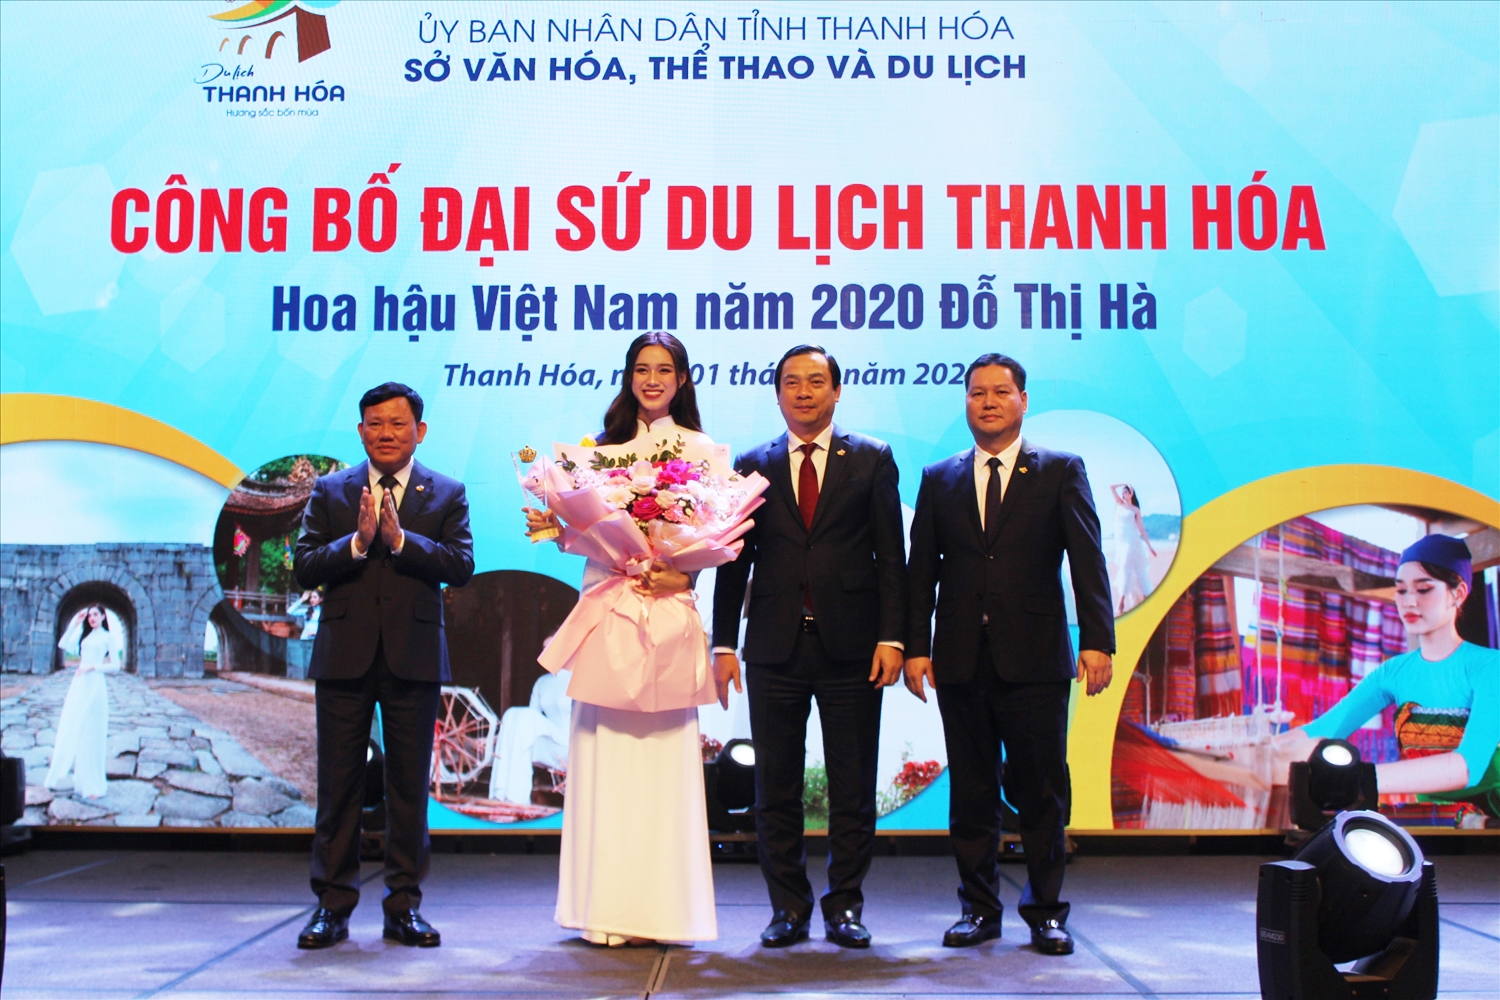 Hoa hậu Đỗ Thị Hà chính thức trở thành đại xứ du lịch tỉnh Thanh Hóa